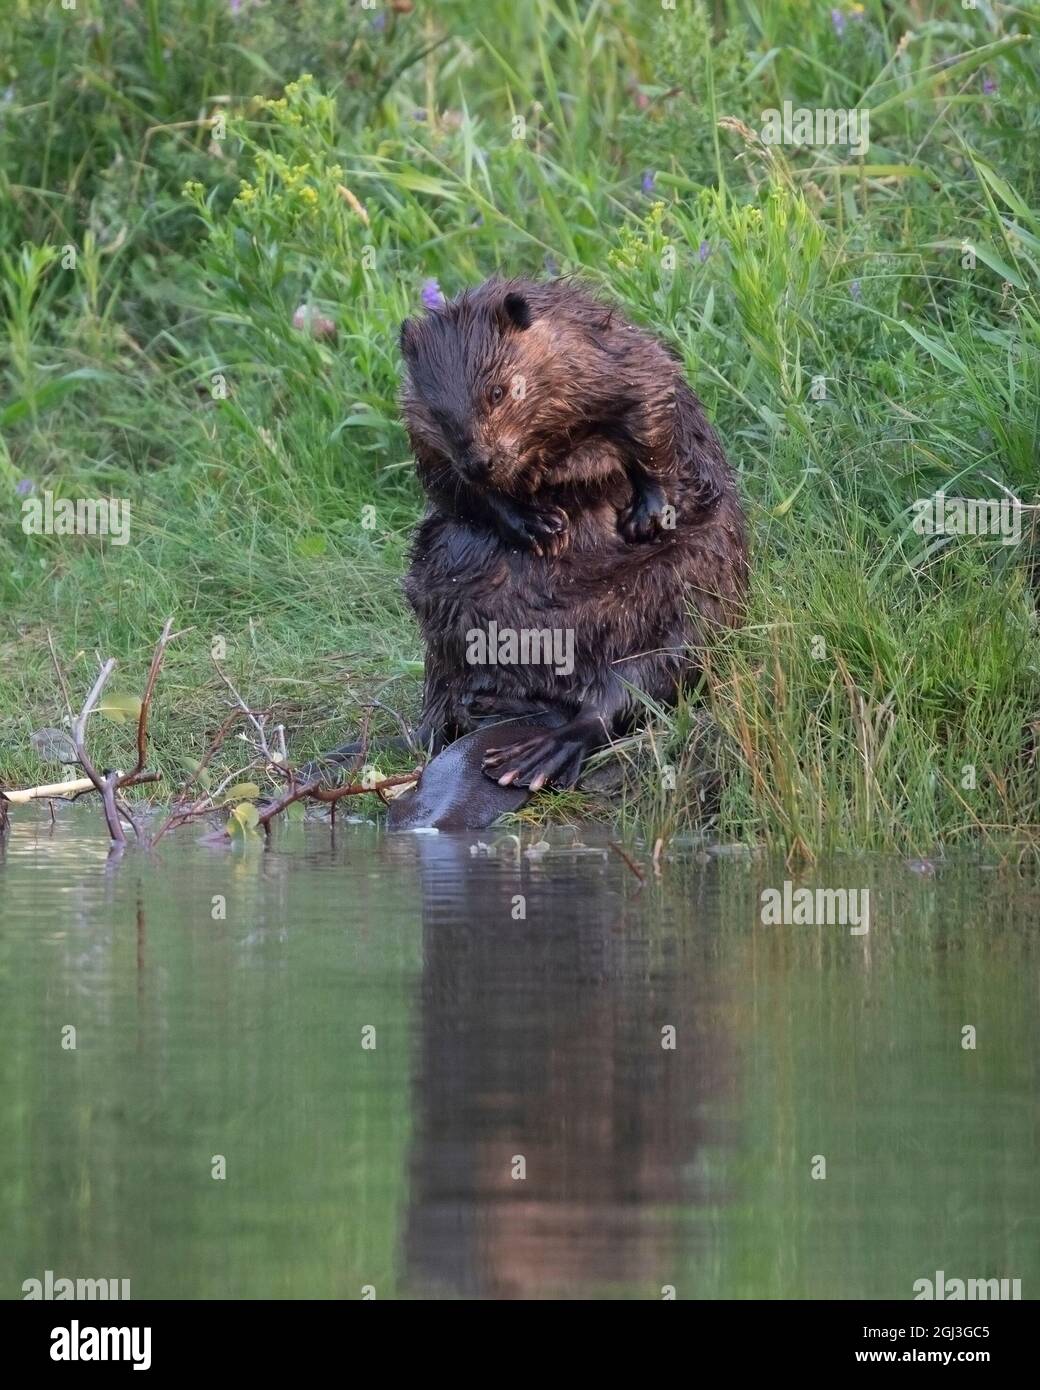 Fourrure de toilettage Beaver, assise dans une végétation verte au bord d'un étang. Ricin canadensis Banque D'Images